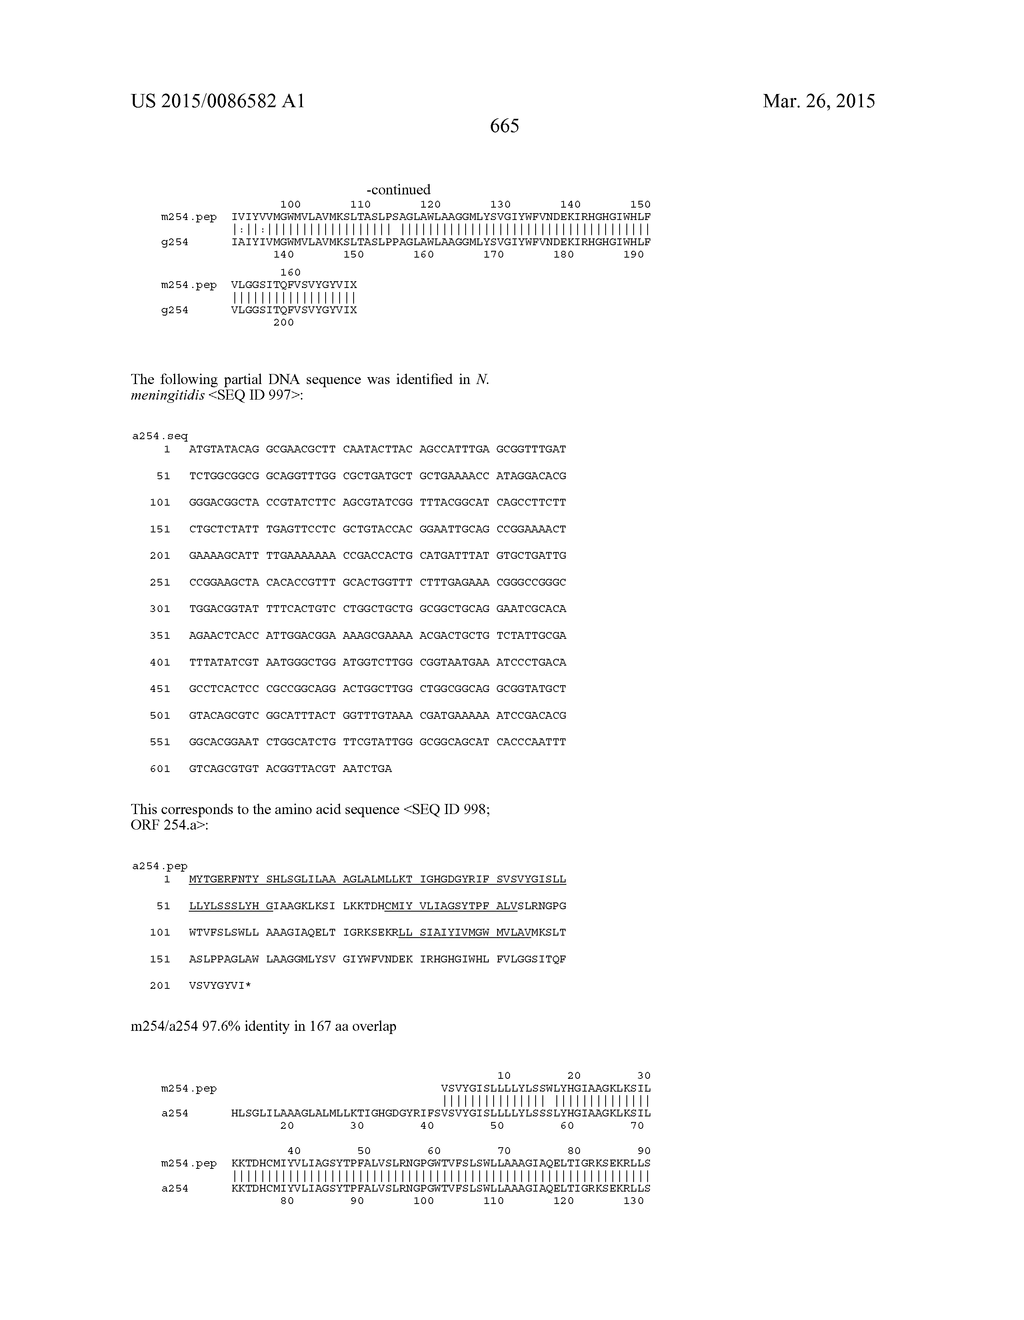 NEISSERIA MENINGITIDIS ANTIGENS AND COMPOSITIONS - diagram, schematic, and image 697